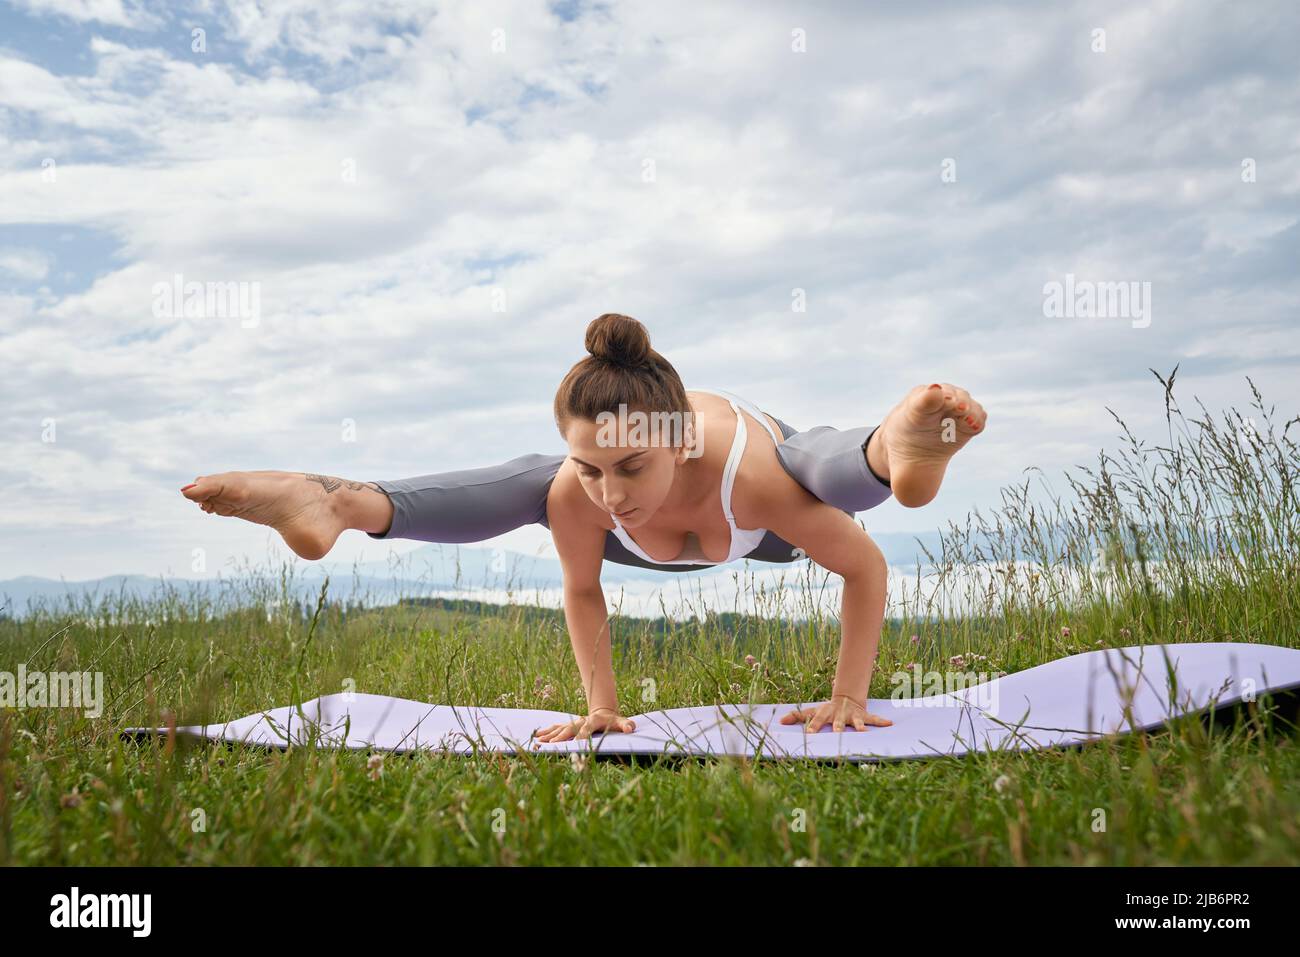 Starke junge Frau im aktiven Ohr balanciert auf den Händen und dehnt die Beine während der Freizeit an der frischen Luft. Konzept eines gesunden und aktiven Lebensstils. Stockfoto